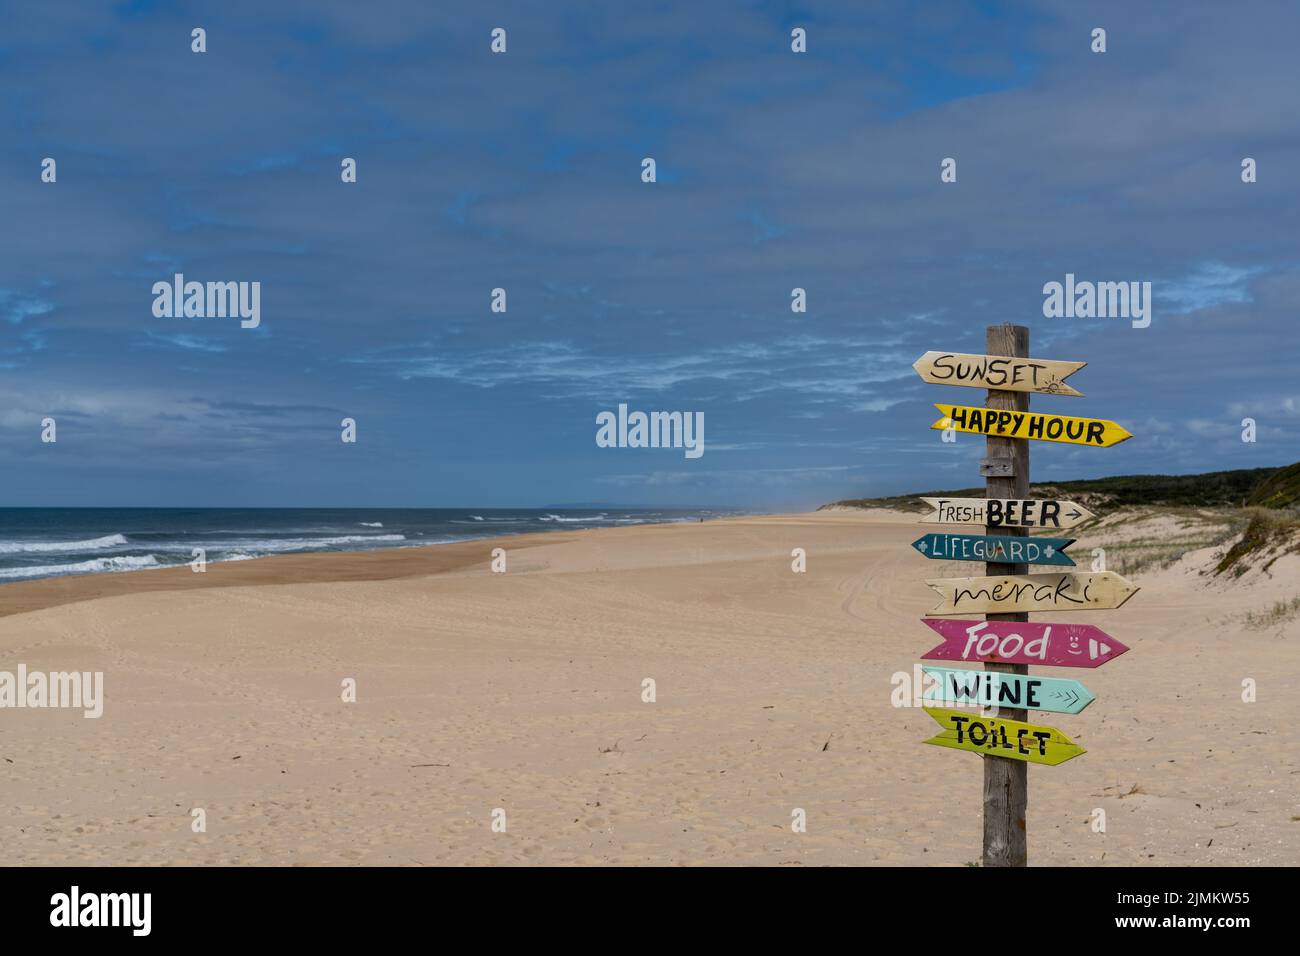 Ein malerischer leerer Strand mit bunten und humorvollen Schildern, die in verschiedene Richtungen zeigen Stockfoto